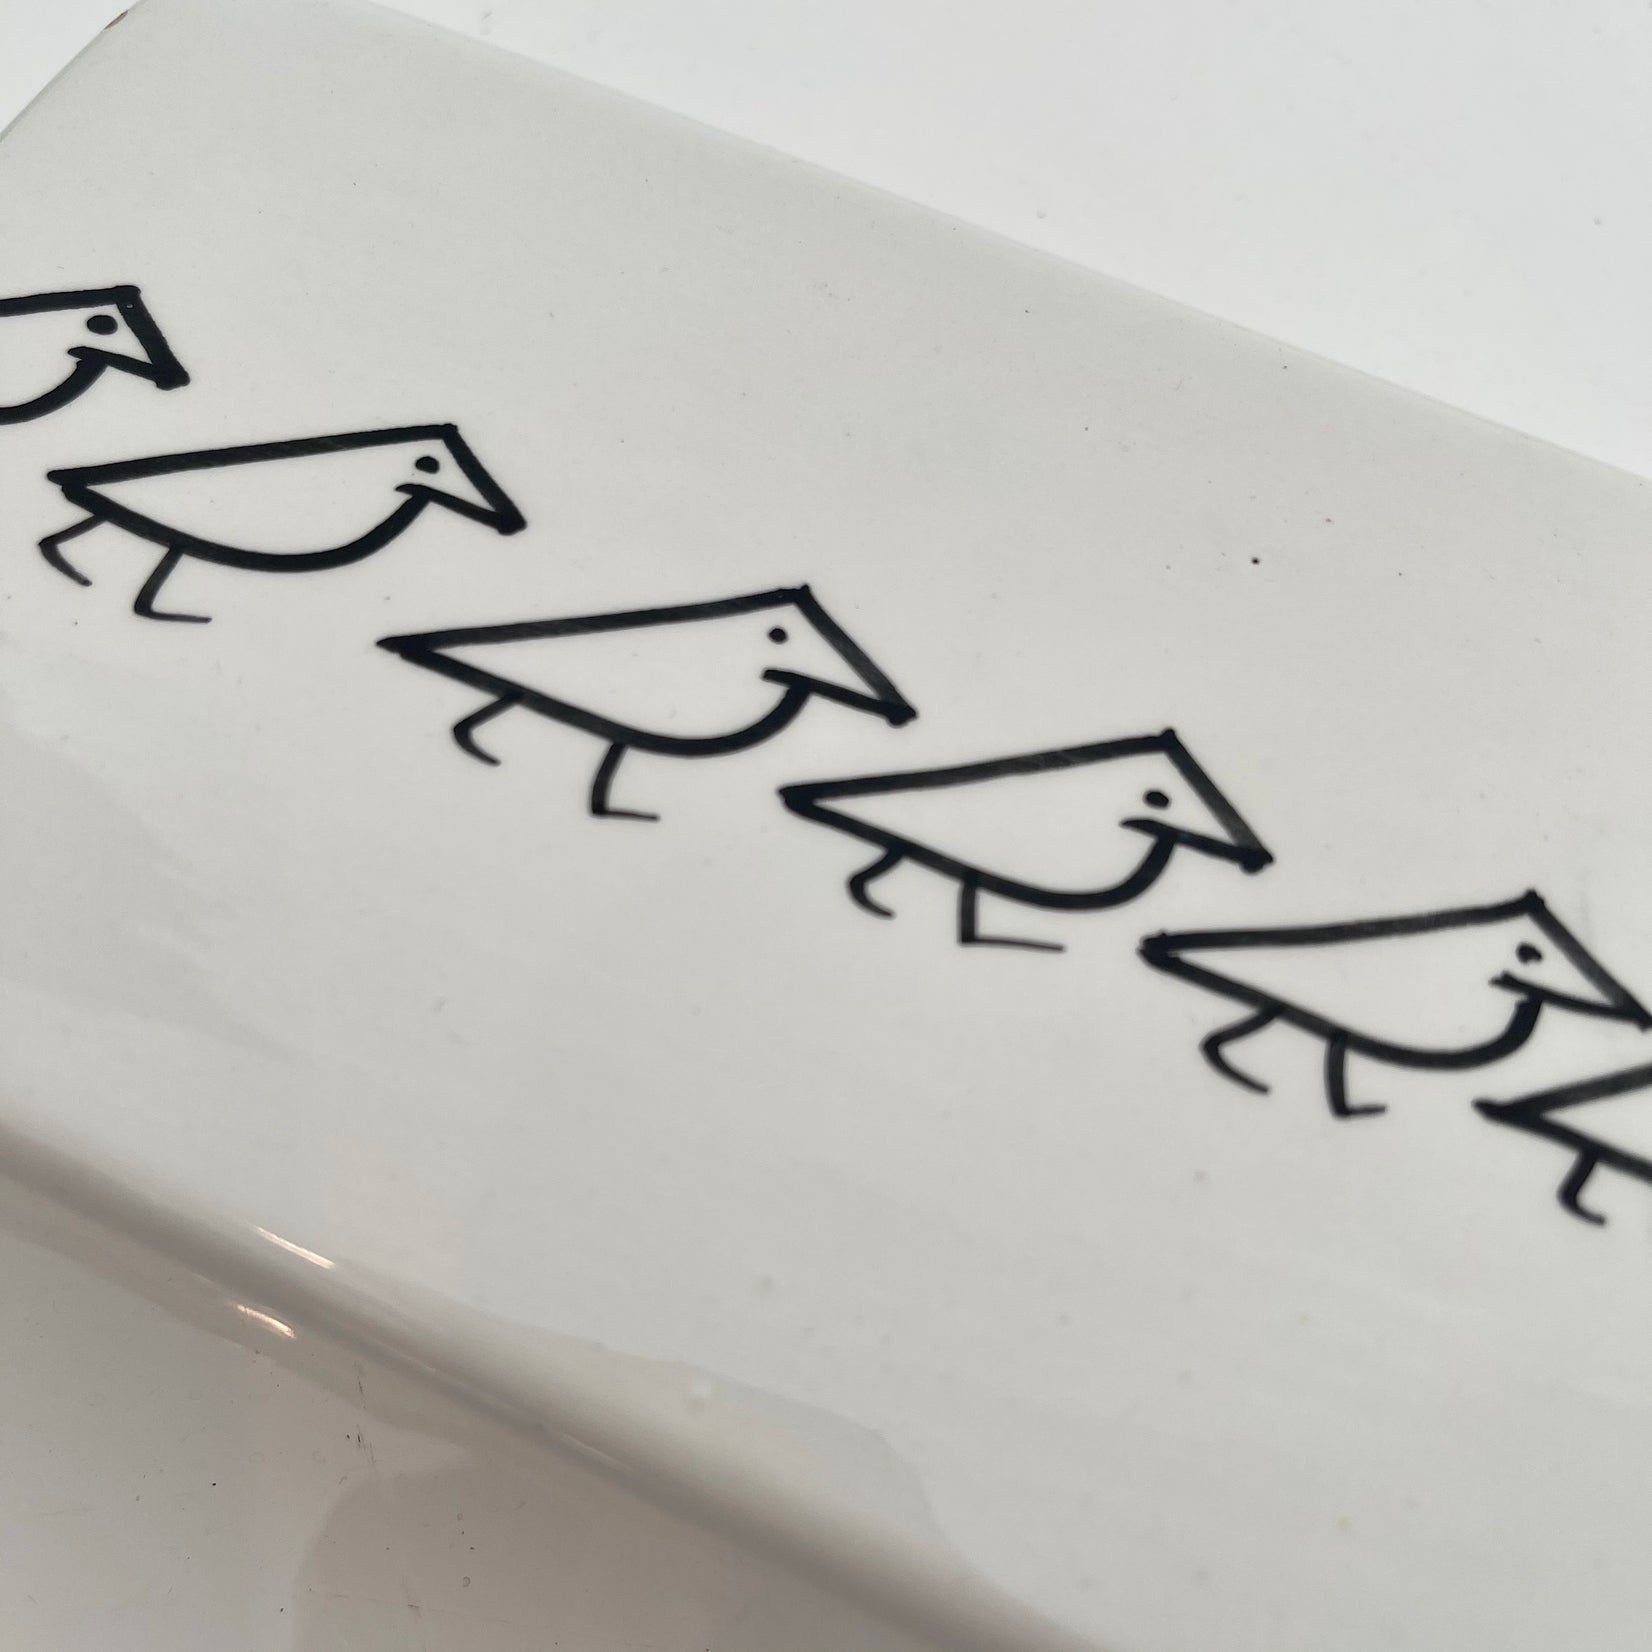 Italian Ceramic Box with Birds by Raymor, 1970s Italy